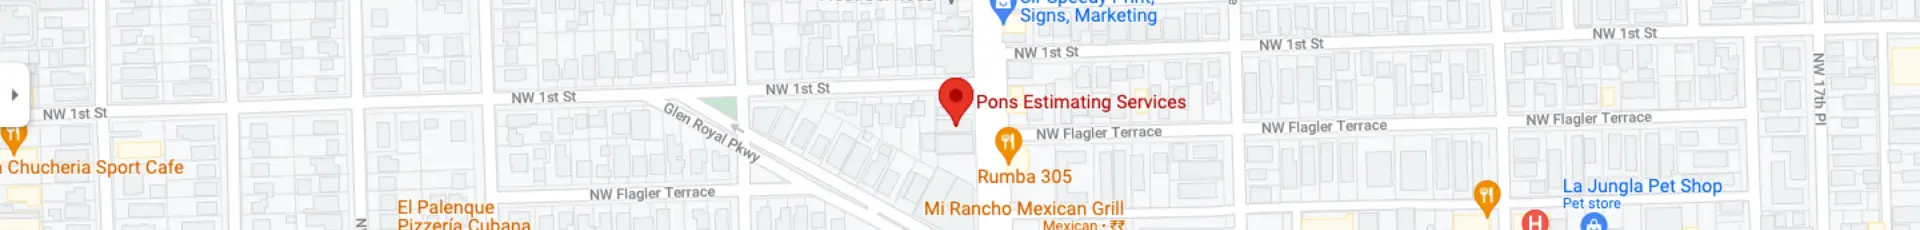 Businnes address map